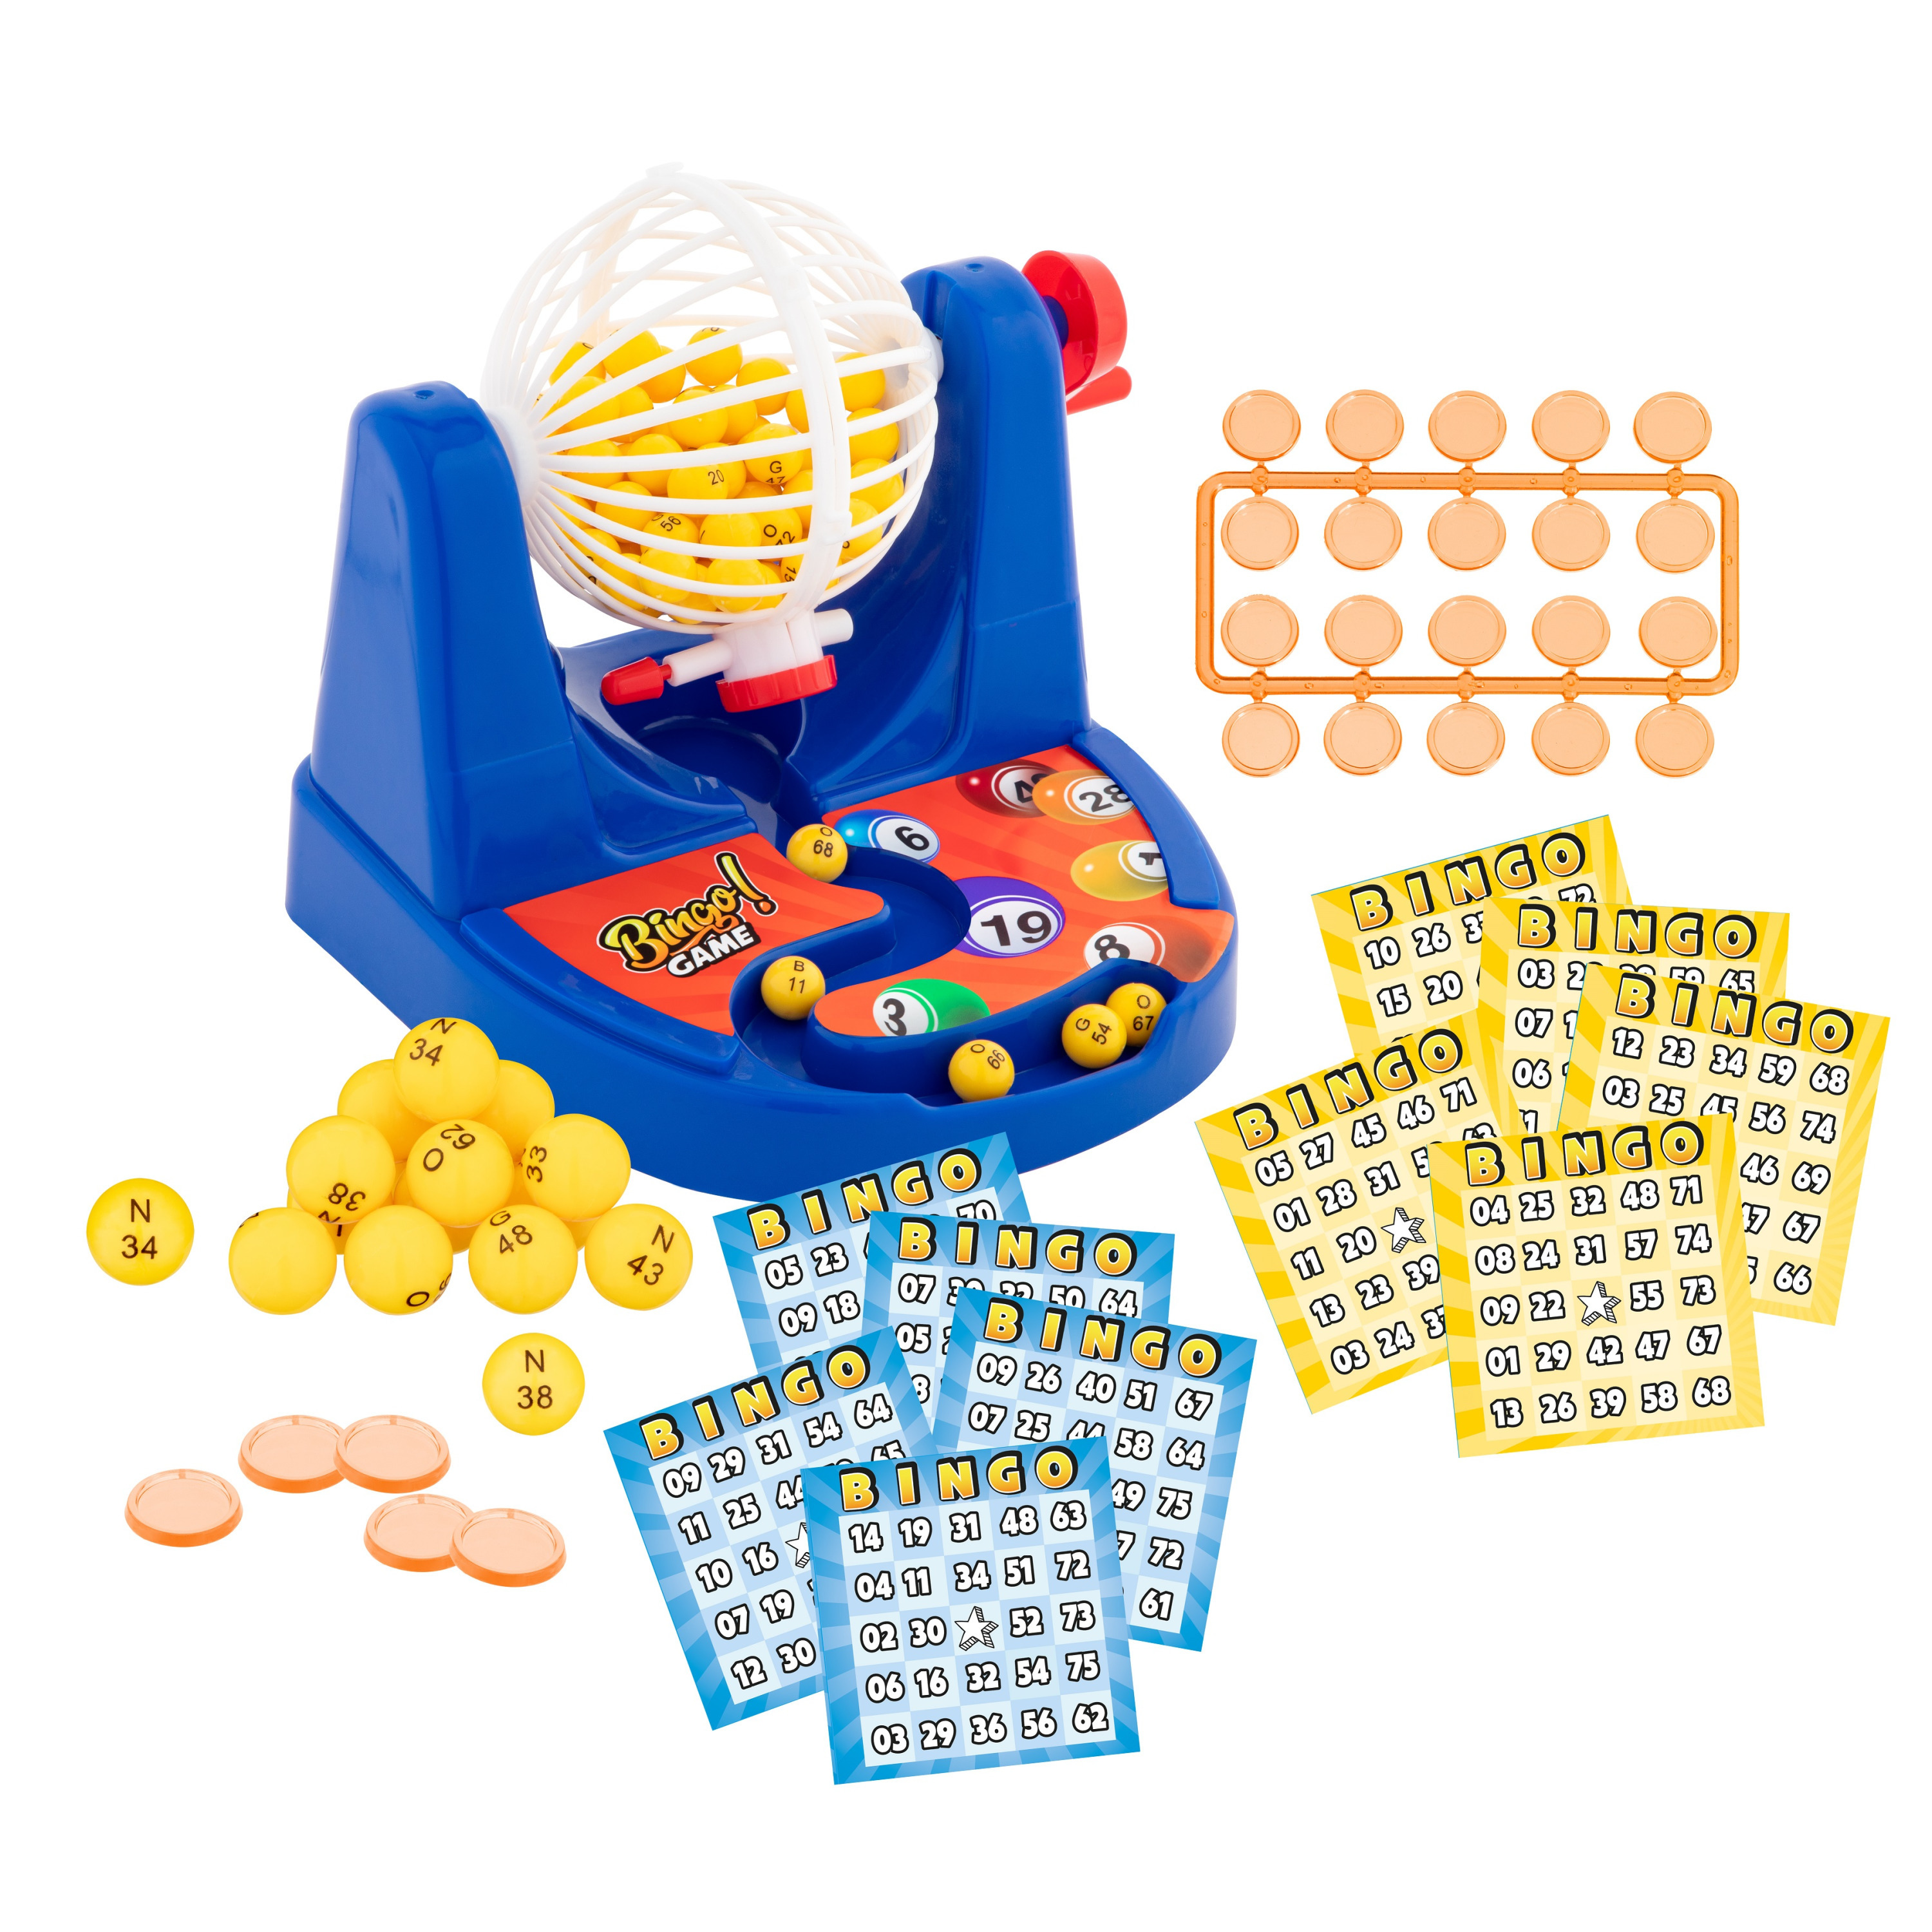 Bingo spel set blauw nummers 1-75 met molen en 35 bingokaarten